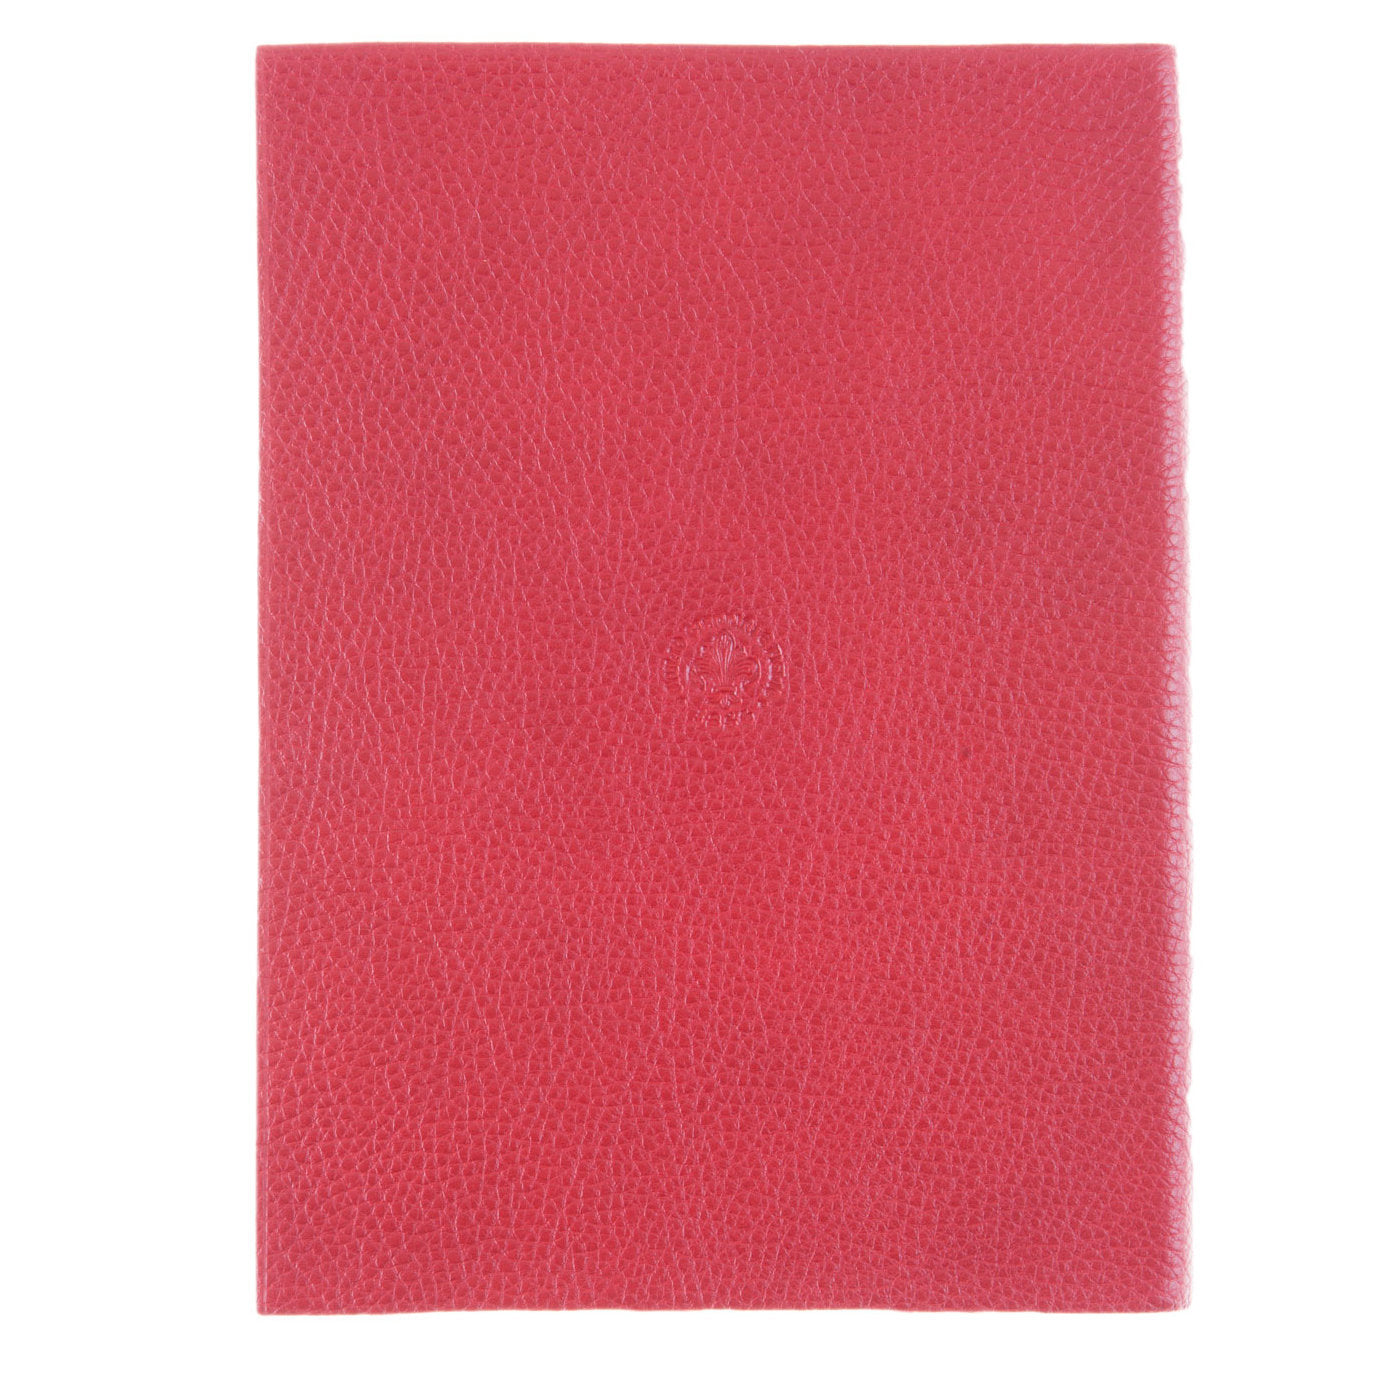 Cuaderno de cuero rojo - Vista alternativa 2